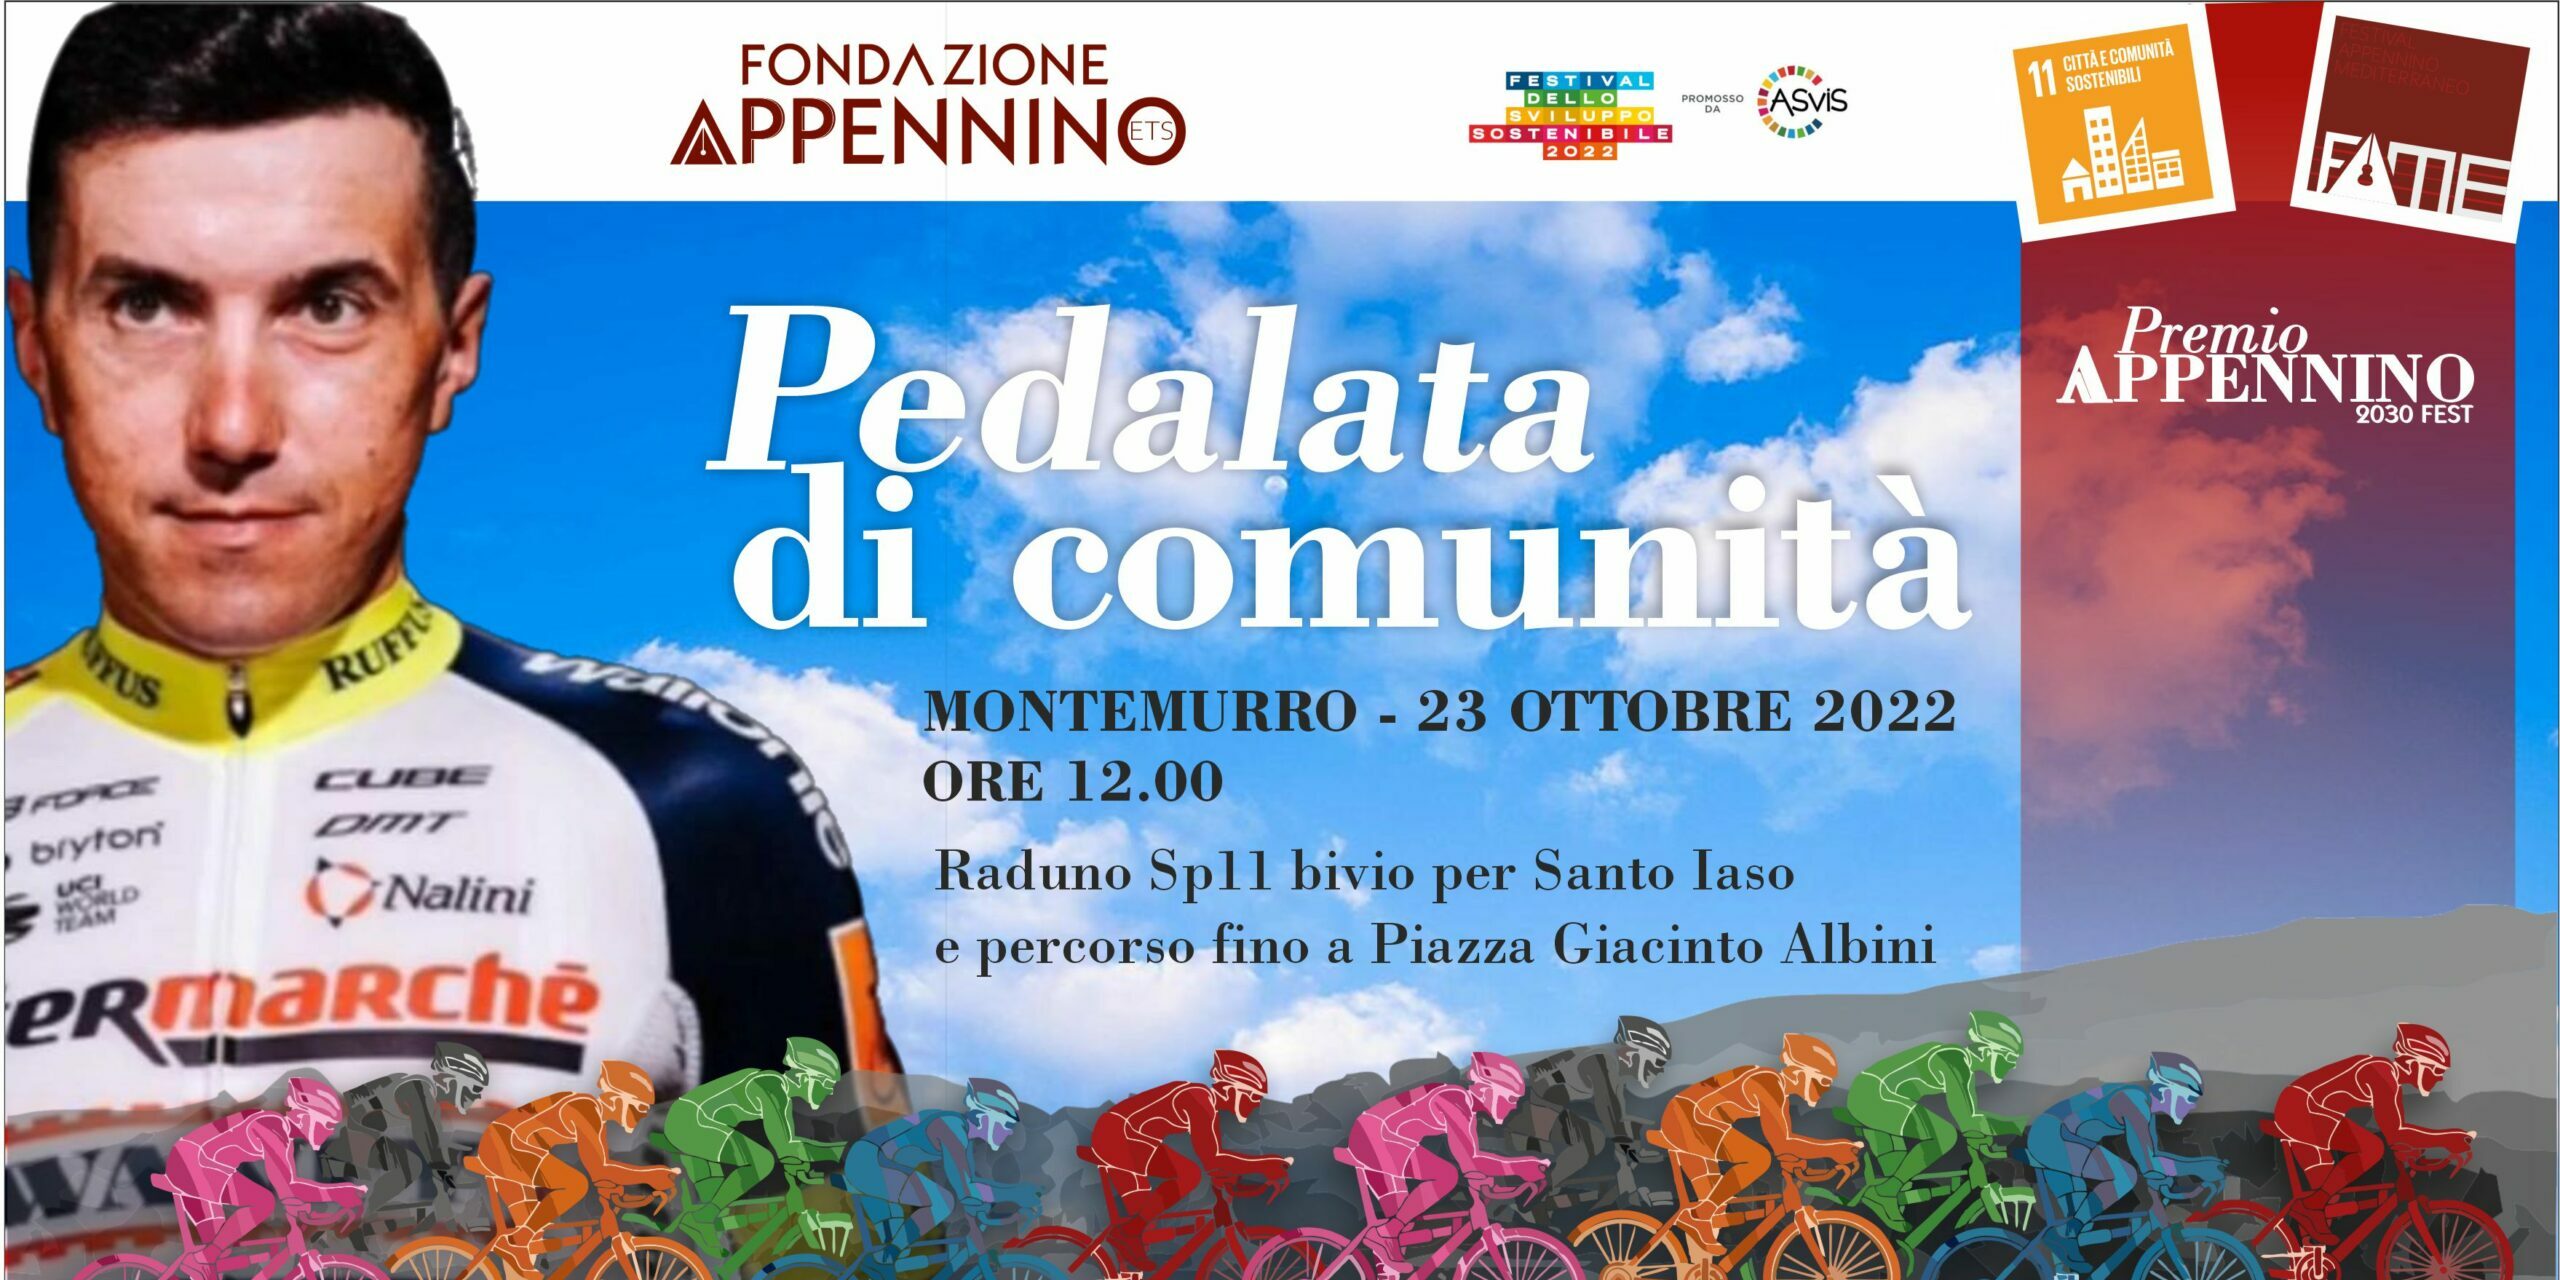 Premio Appennino 2030 Fest, il 22 e 23 la conclusione a Montemurro con i premi a Domenico Pozzovivo e Maria Pia Ammirati